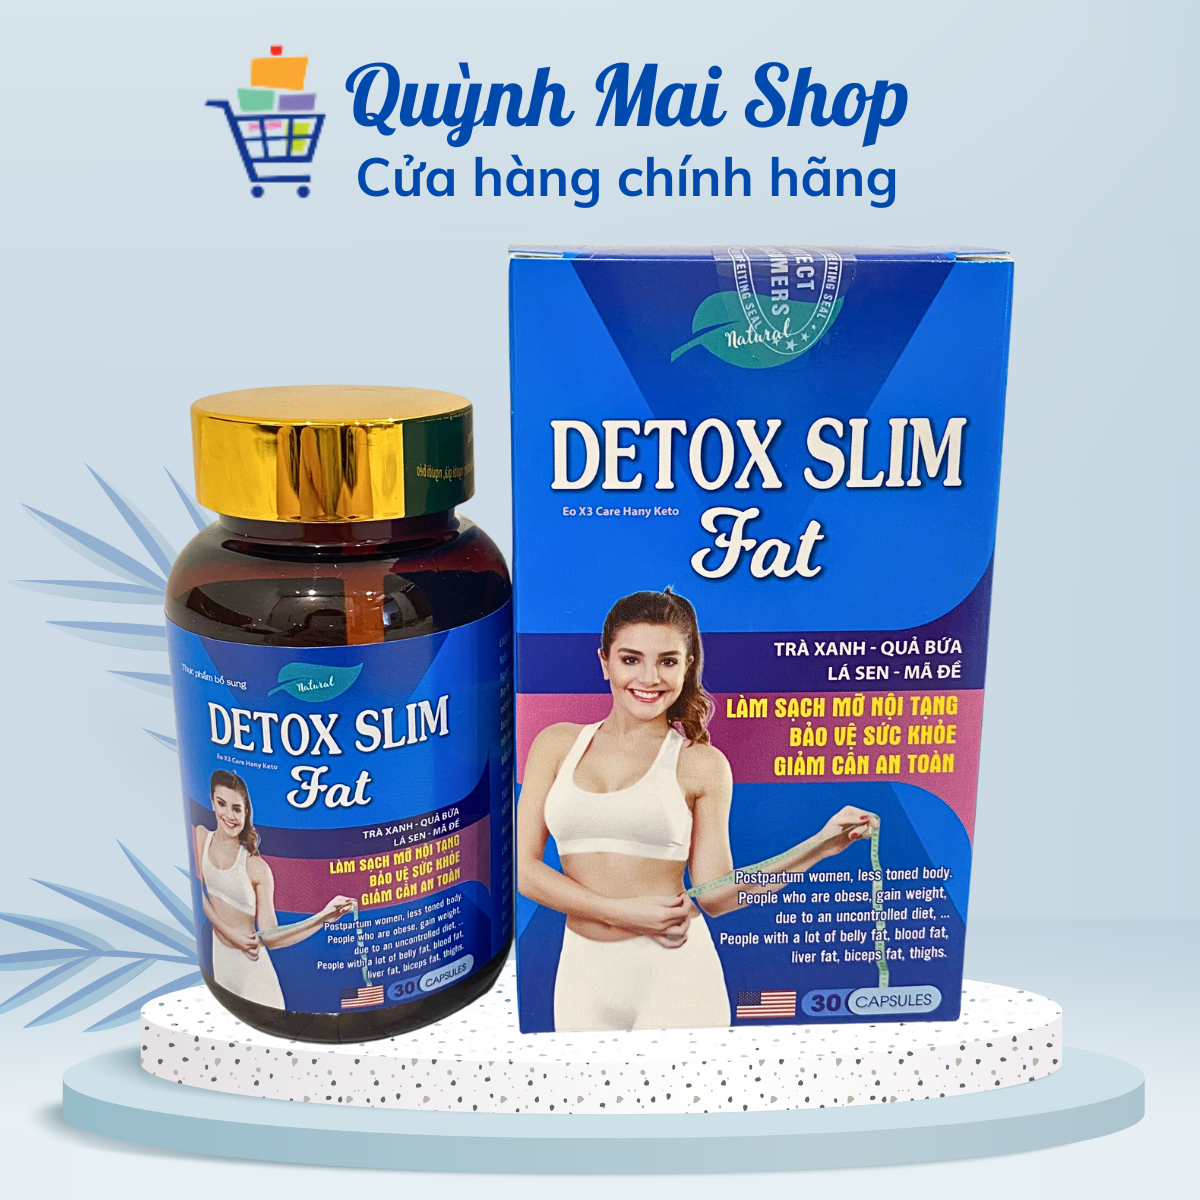 Viên uống giảm cân Detox Slim Eo X3 Care Hany Keto Fat hỗ trợ chuyển hóa chất béo, làm sạch mỡ nội tạng, thành phần thảo dược an toàn và hiệu quả - Hộp 30 viên - Quỳnh Mai Shop Beauty